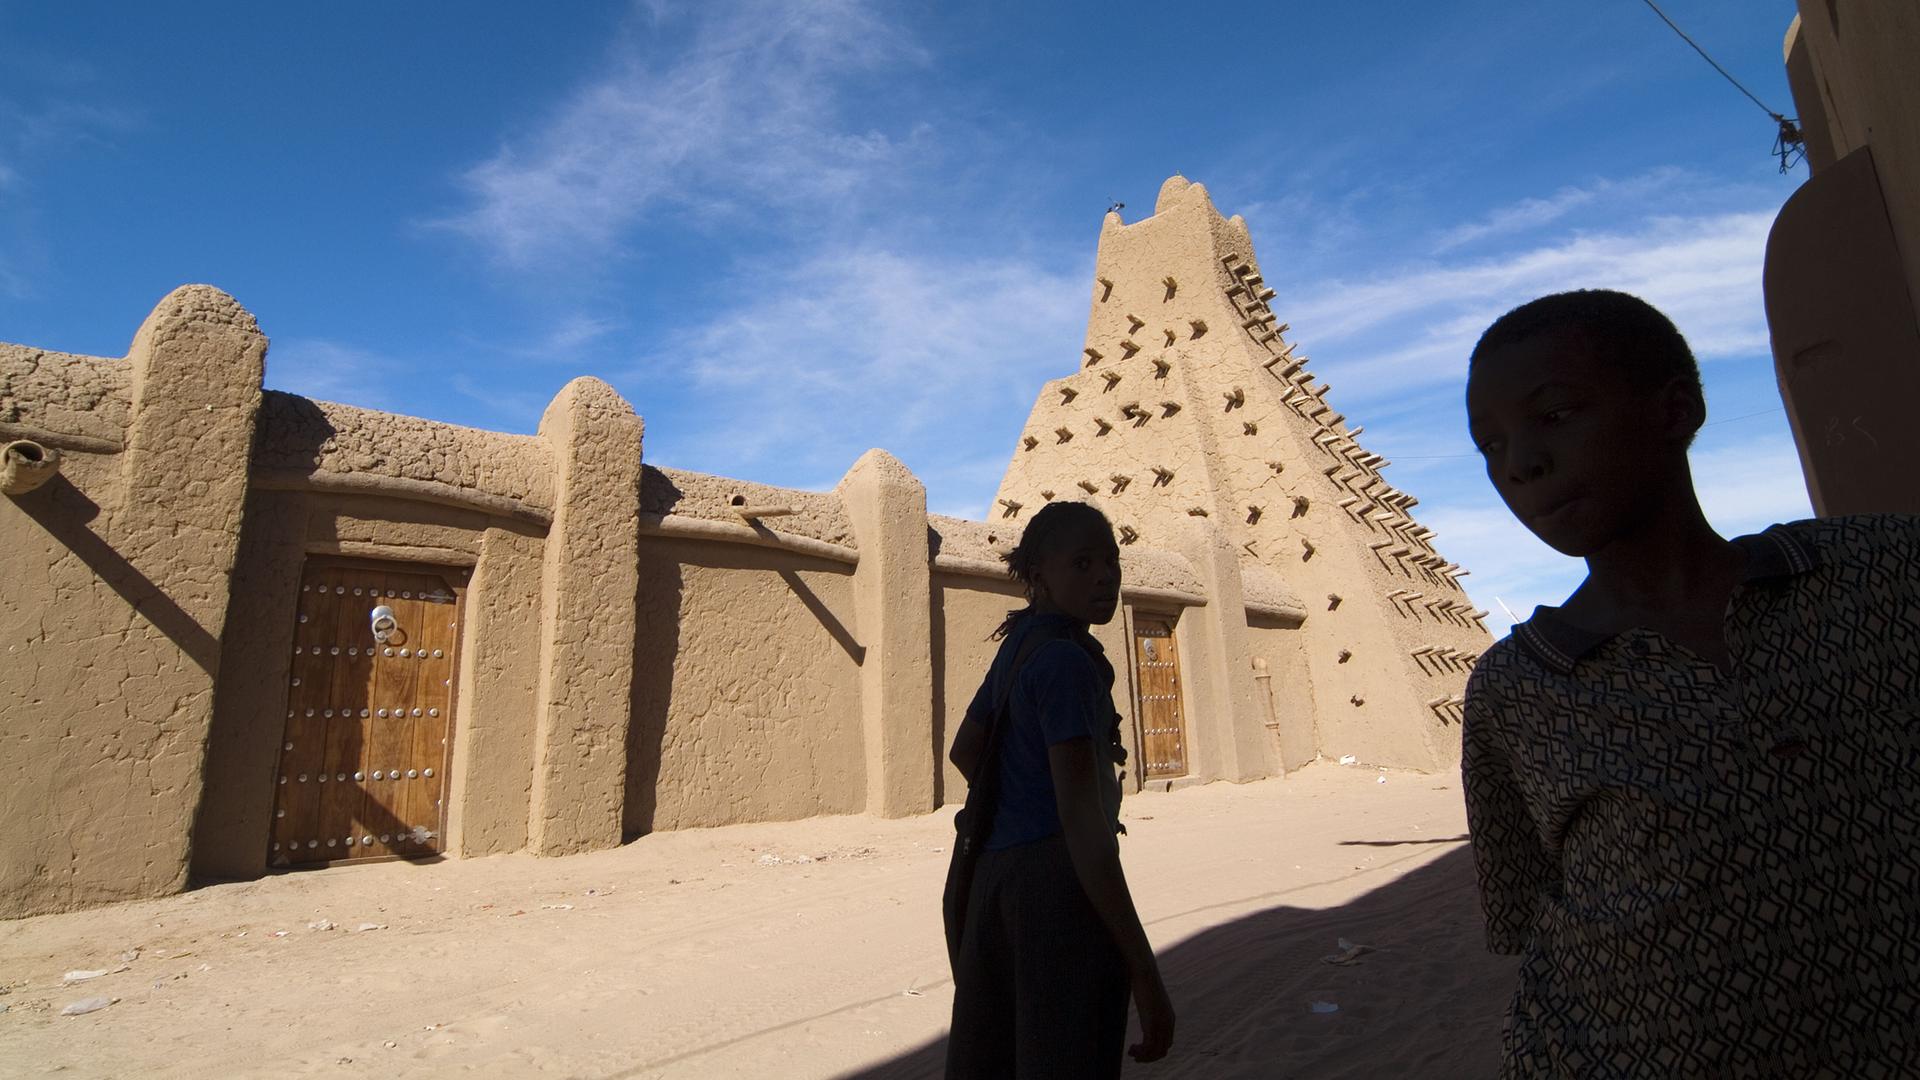 Blick auf die in Lehm gebaute Moschee vor blauem Himmel. Davor die Silhoutte zweier Kinder.